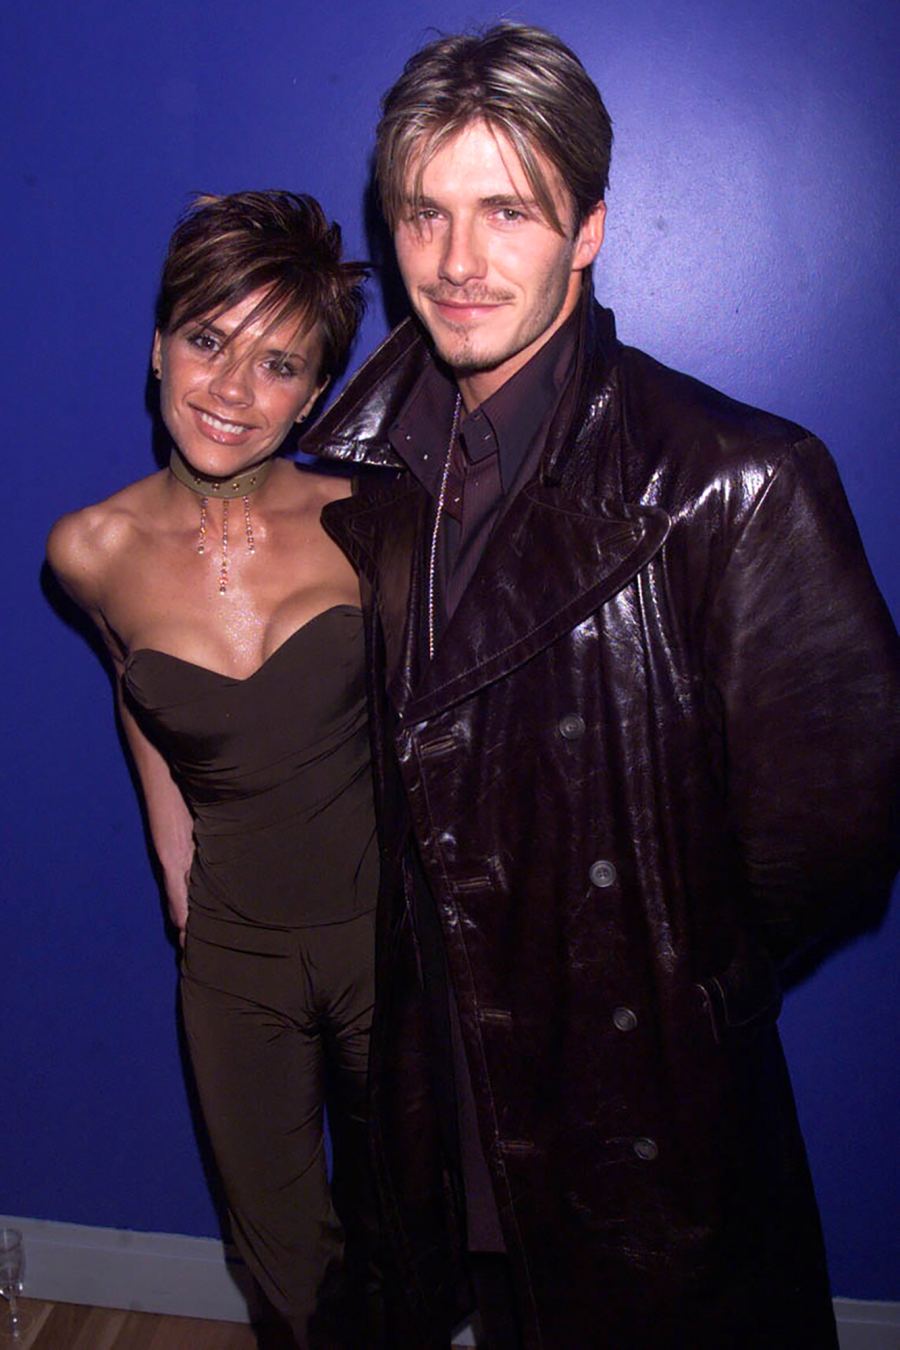 David Beckham and Victoria Beckham's Best Matching Outfits